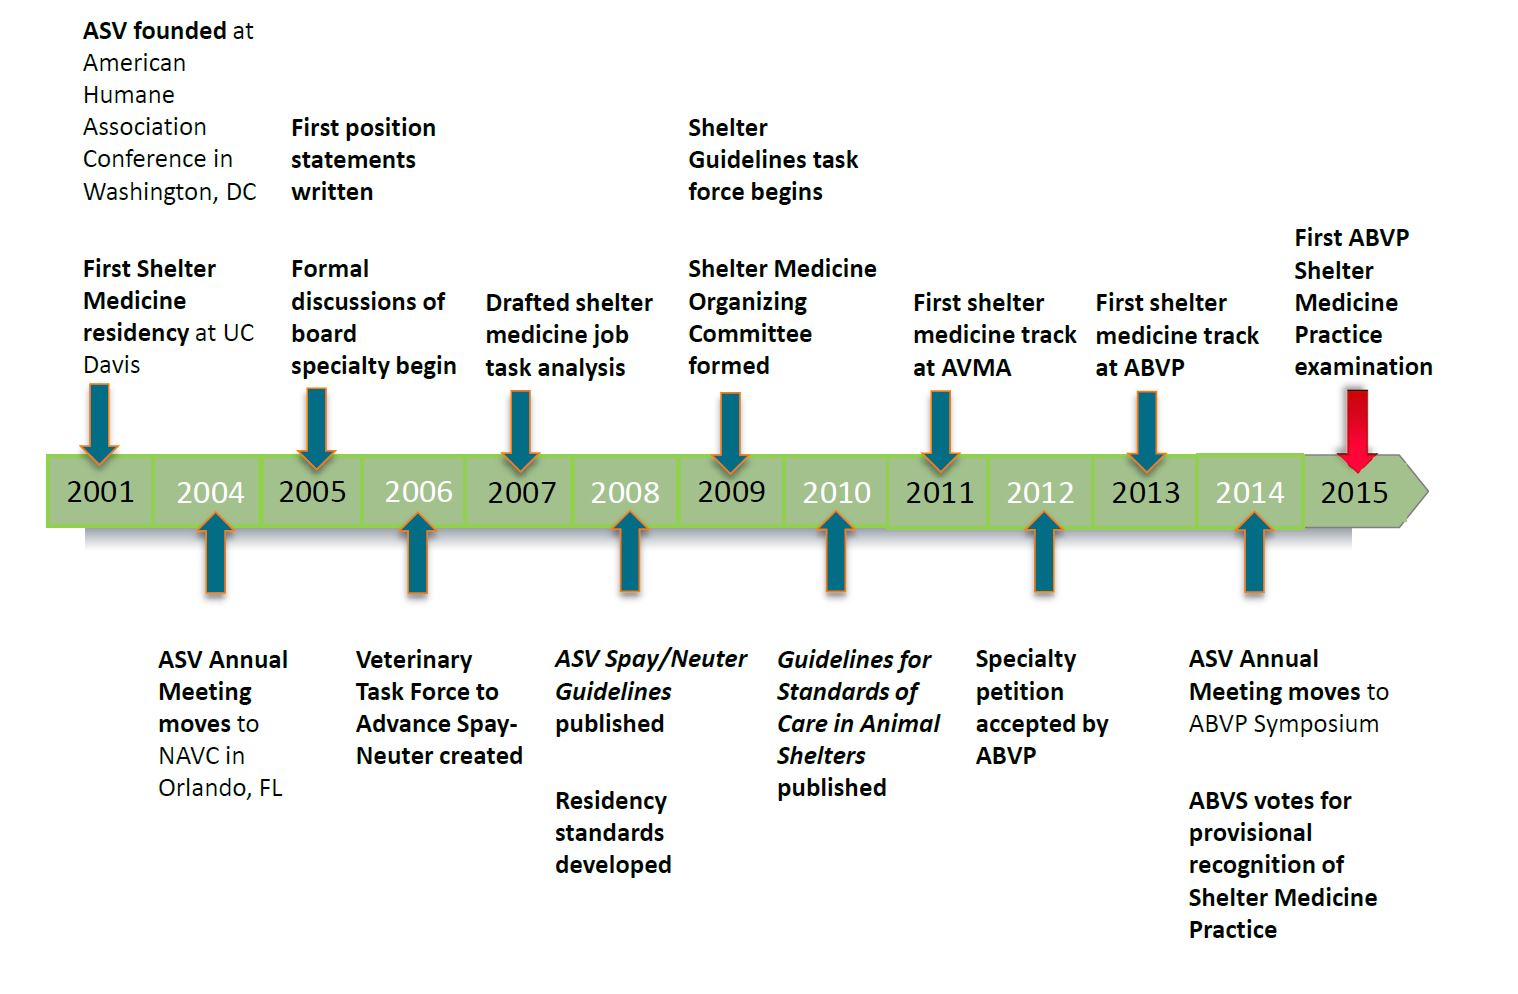 Time line of ASV accomplishments 2001-2015